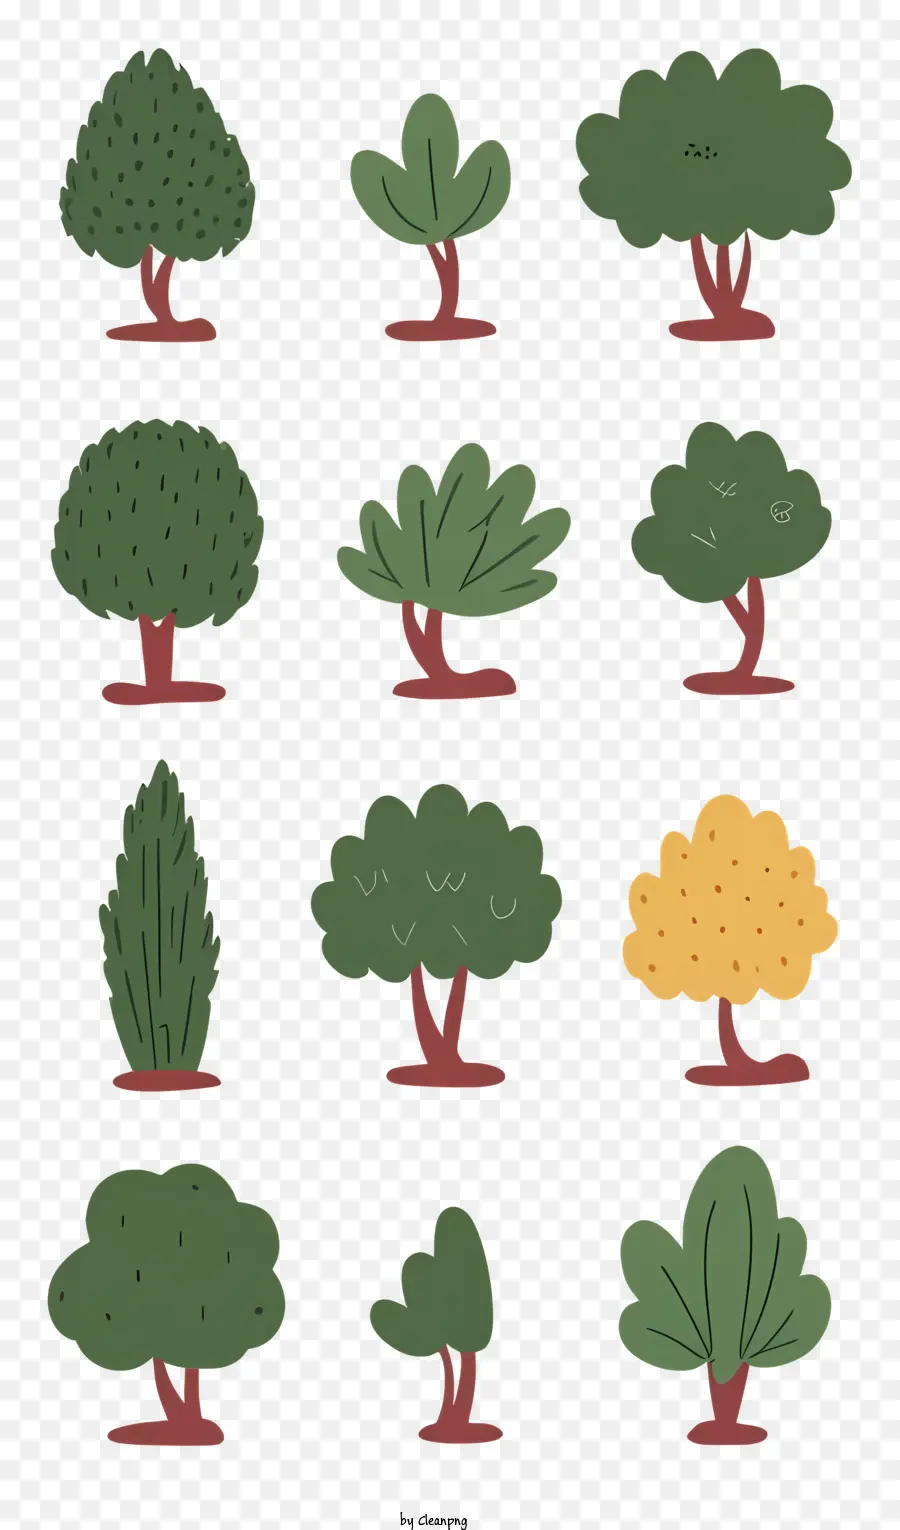 Cây lá lá xanh lá nâu lá vàng - Nhóm cây có hình dạng và lá khác nhau